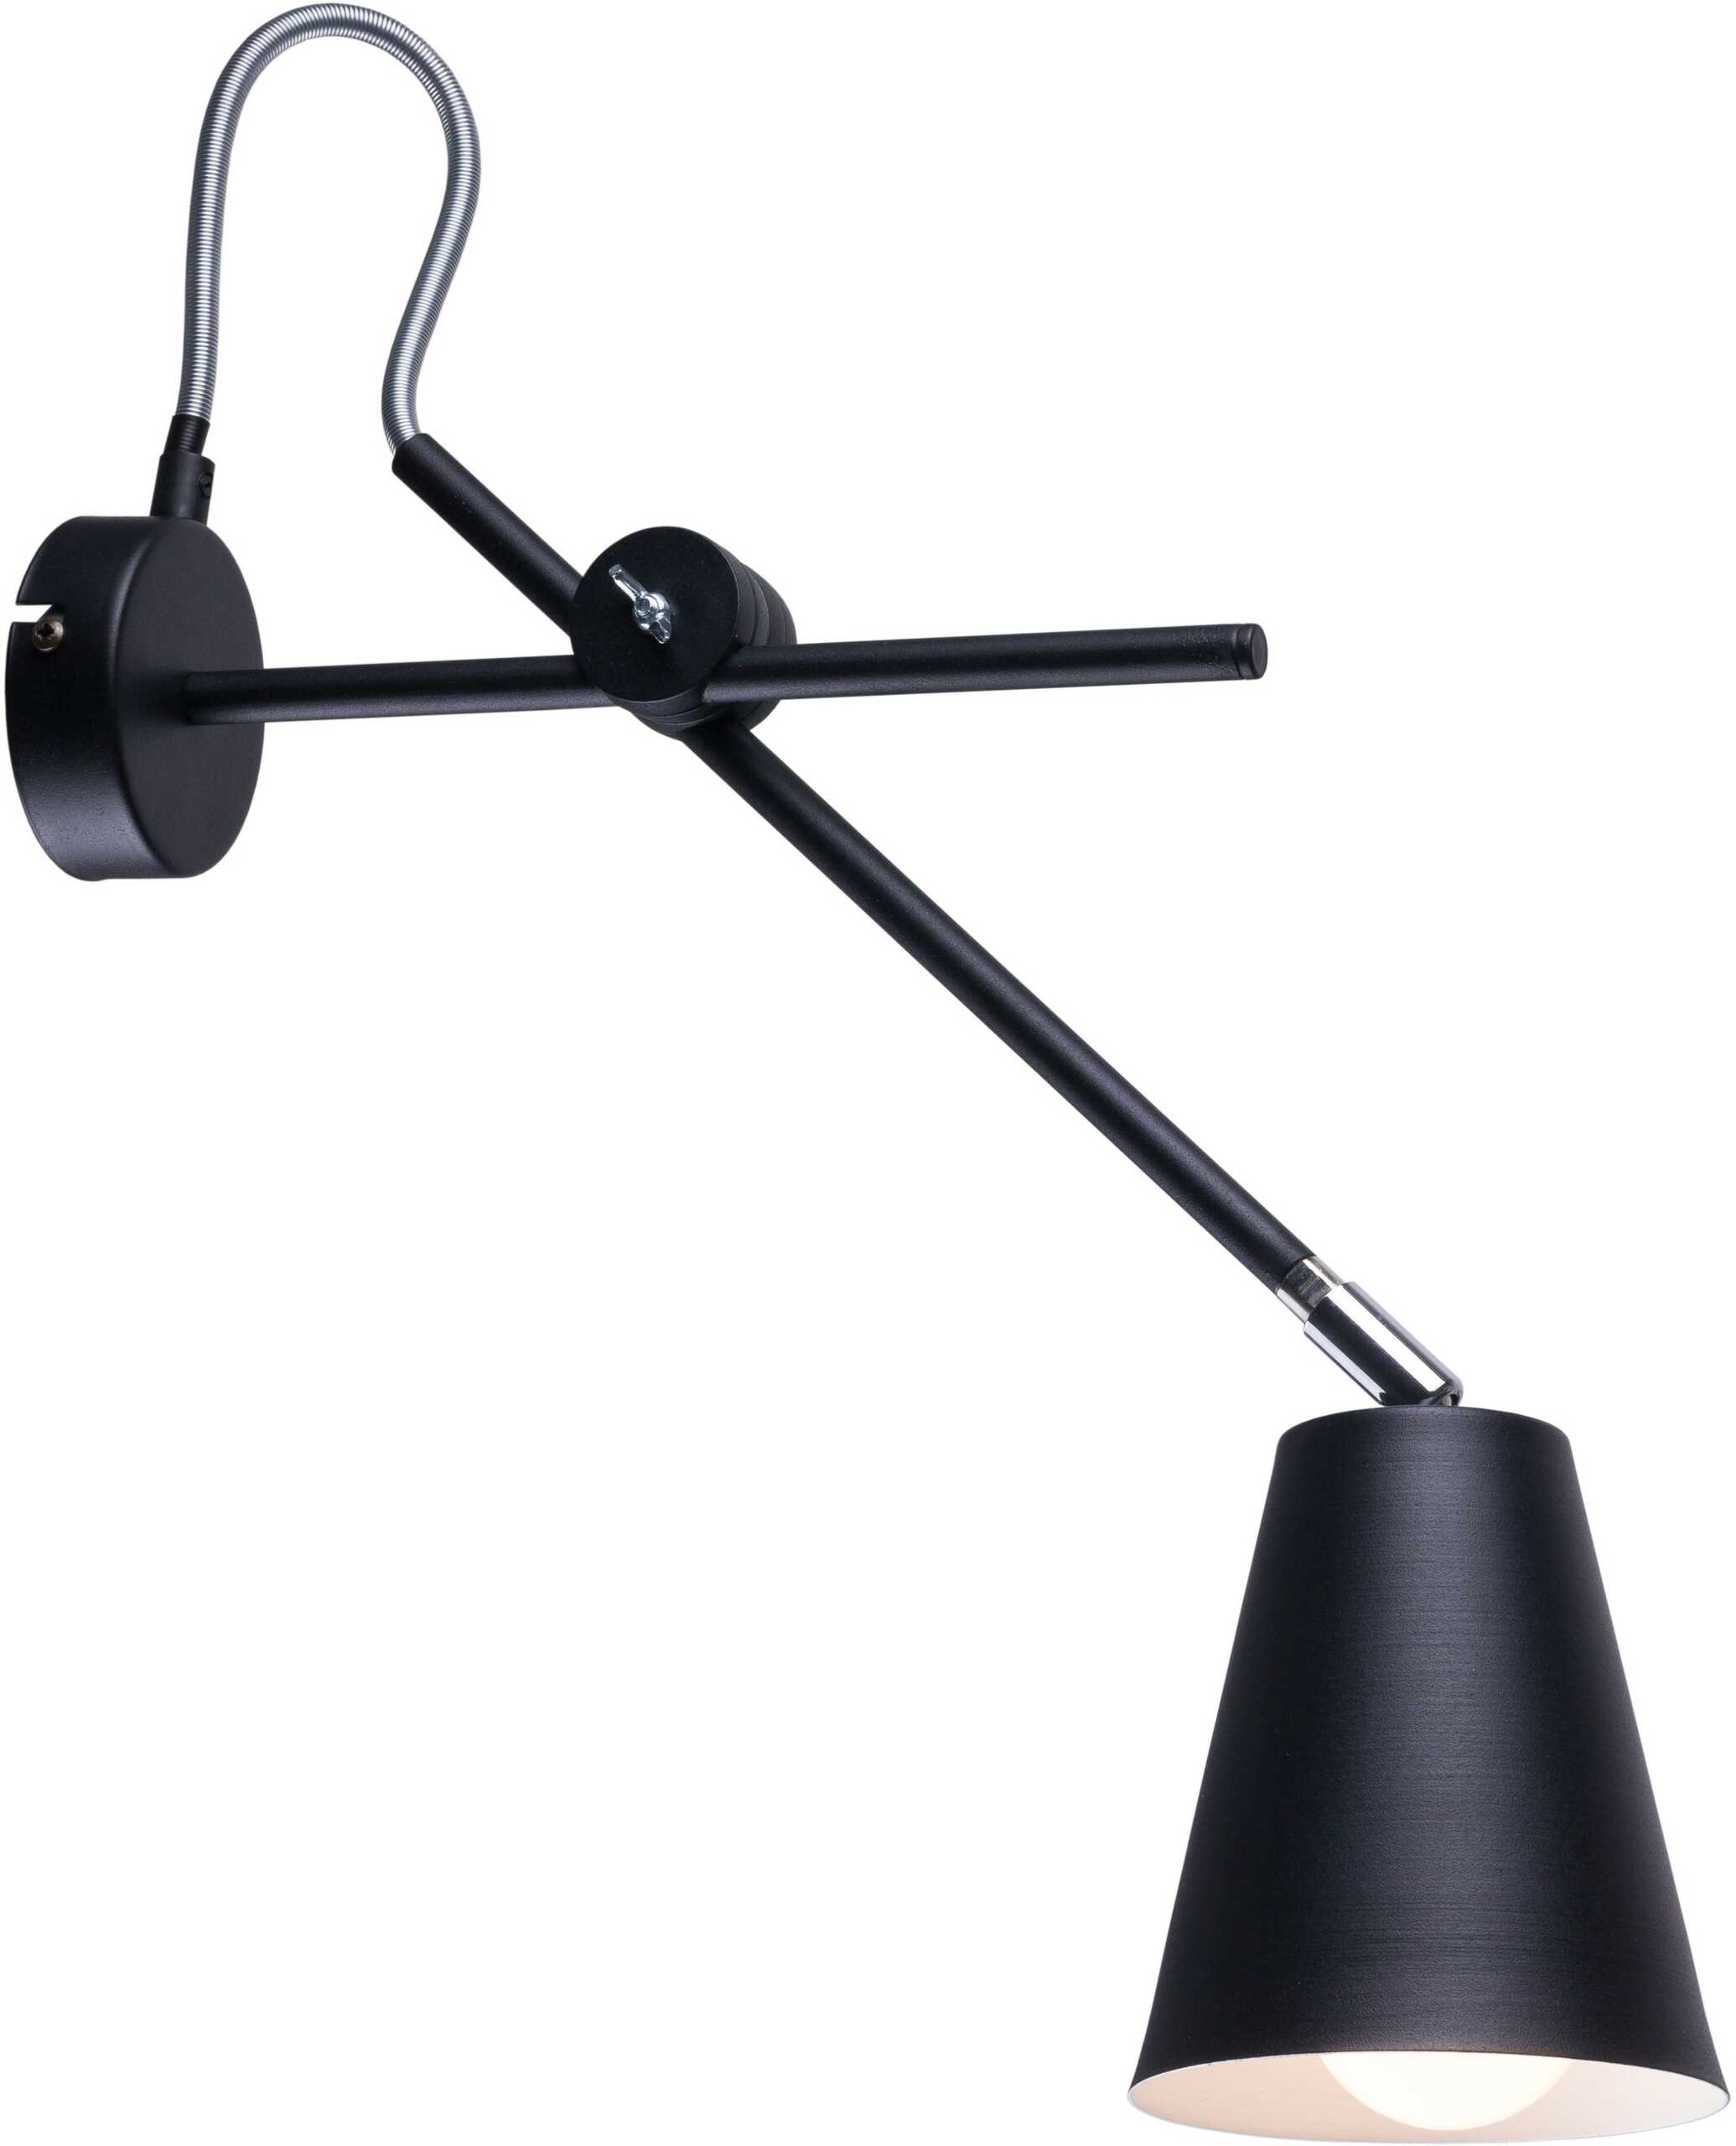 Aldex Arte 1008C1 Kinkiet lampa ścienna 1x60W E27 czarny - wysyłka w 24h